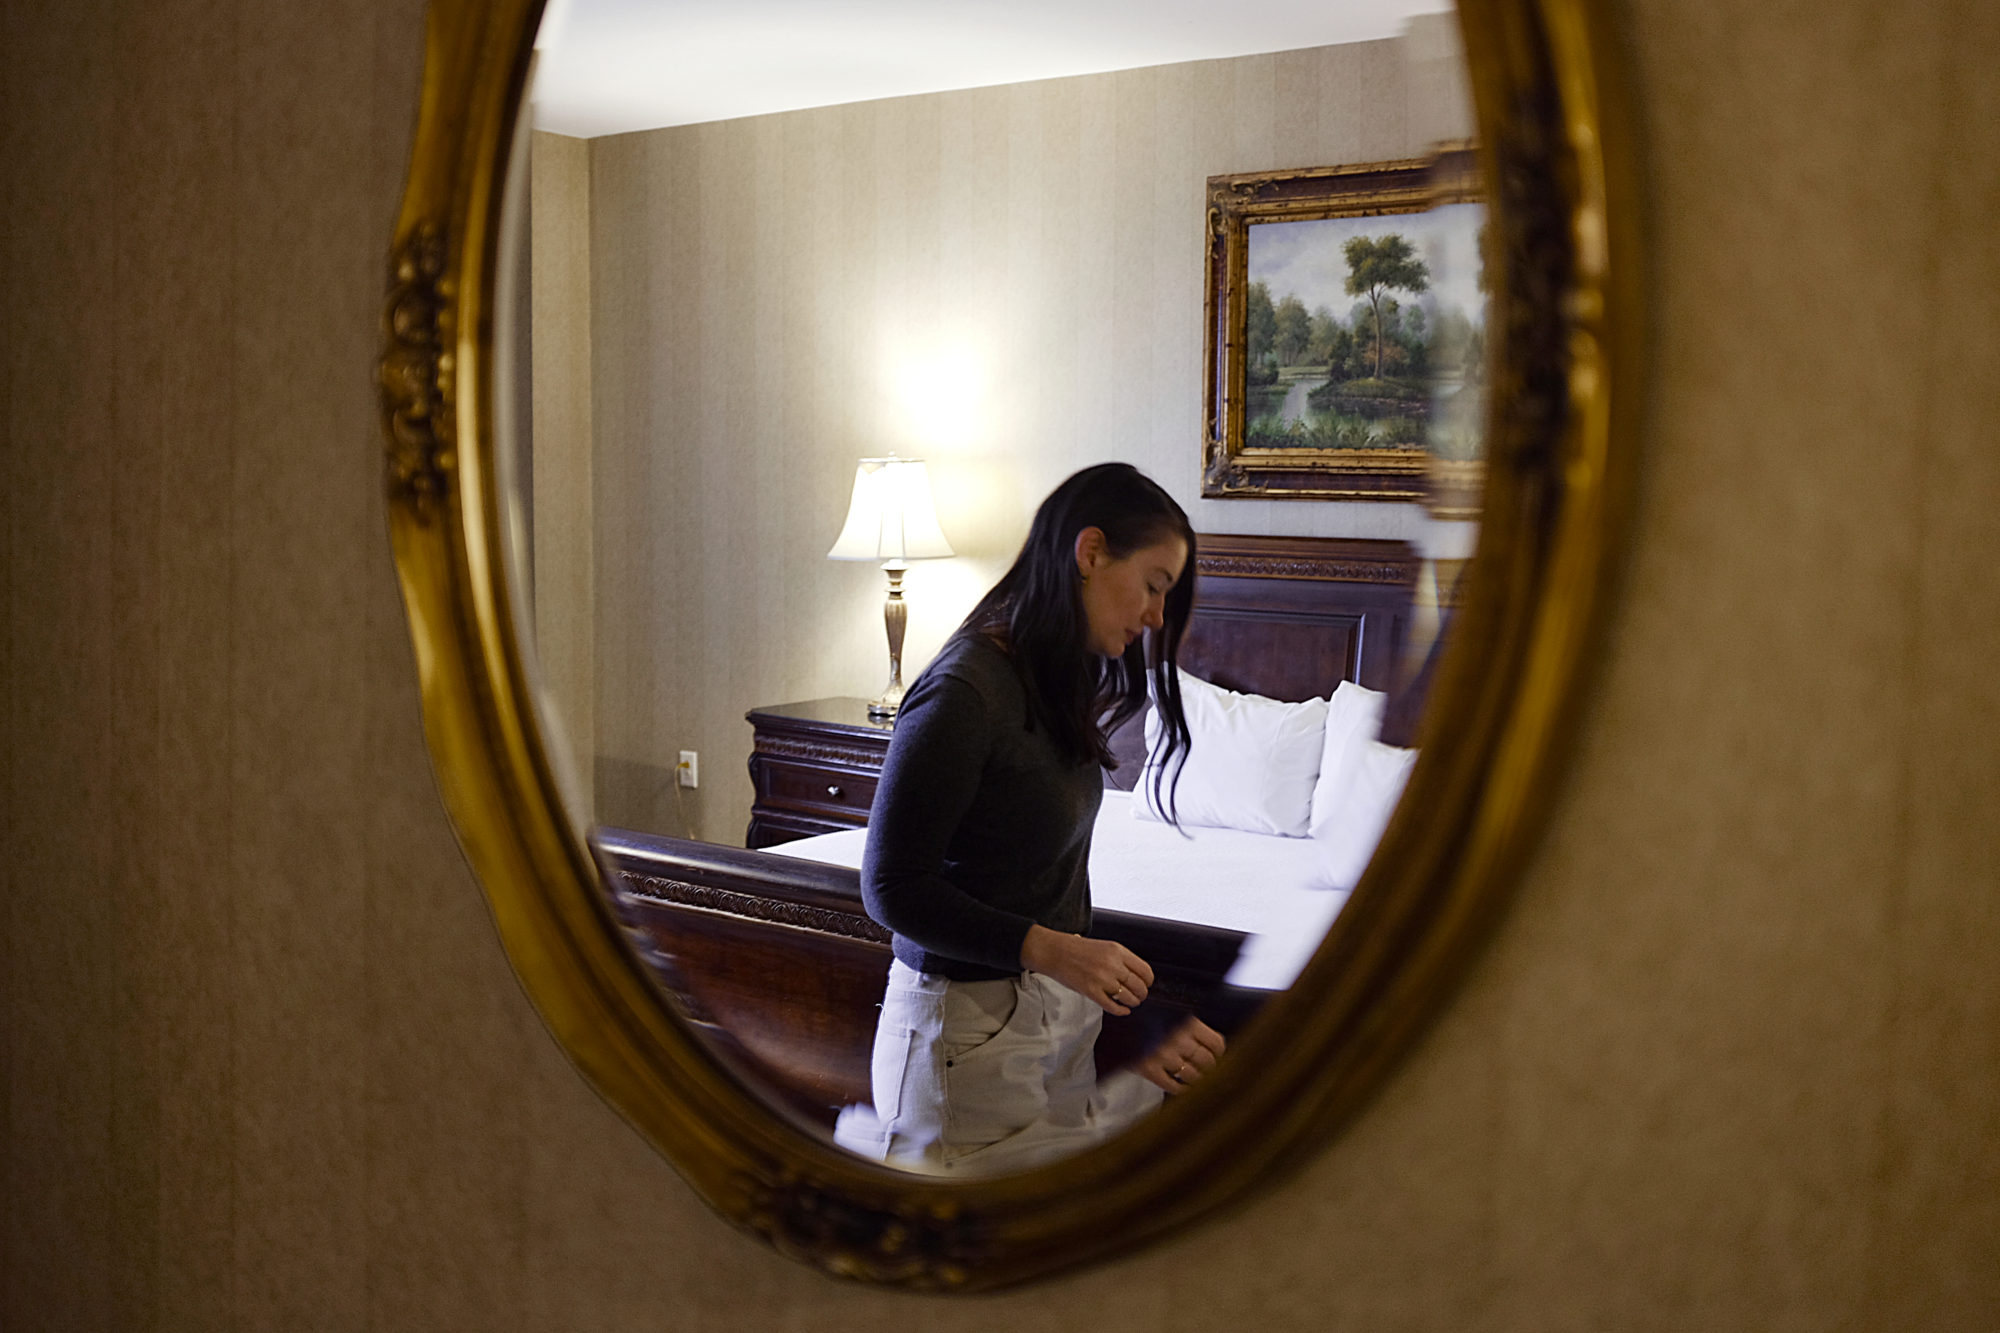 Alyssa is seen through a mirror in a hotel room